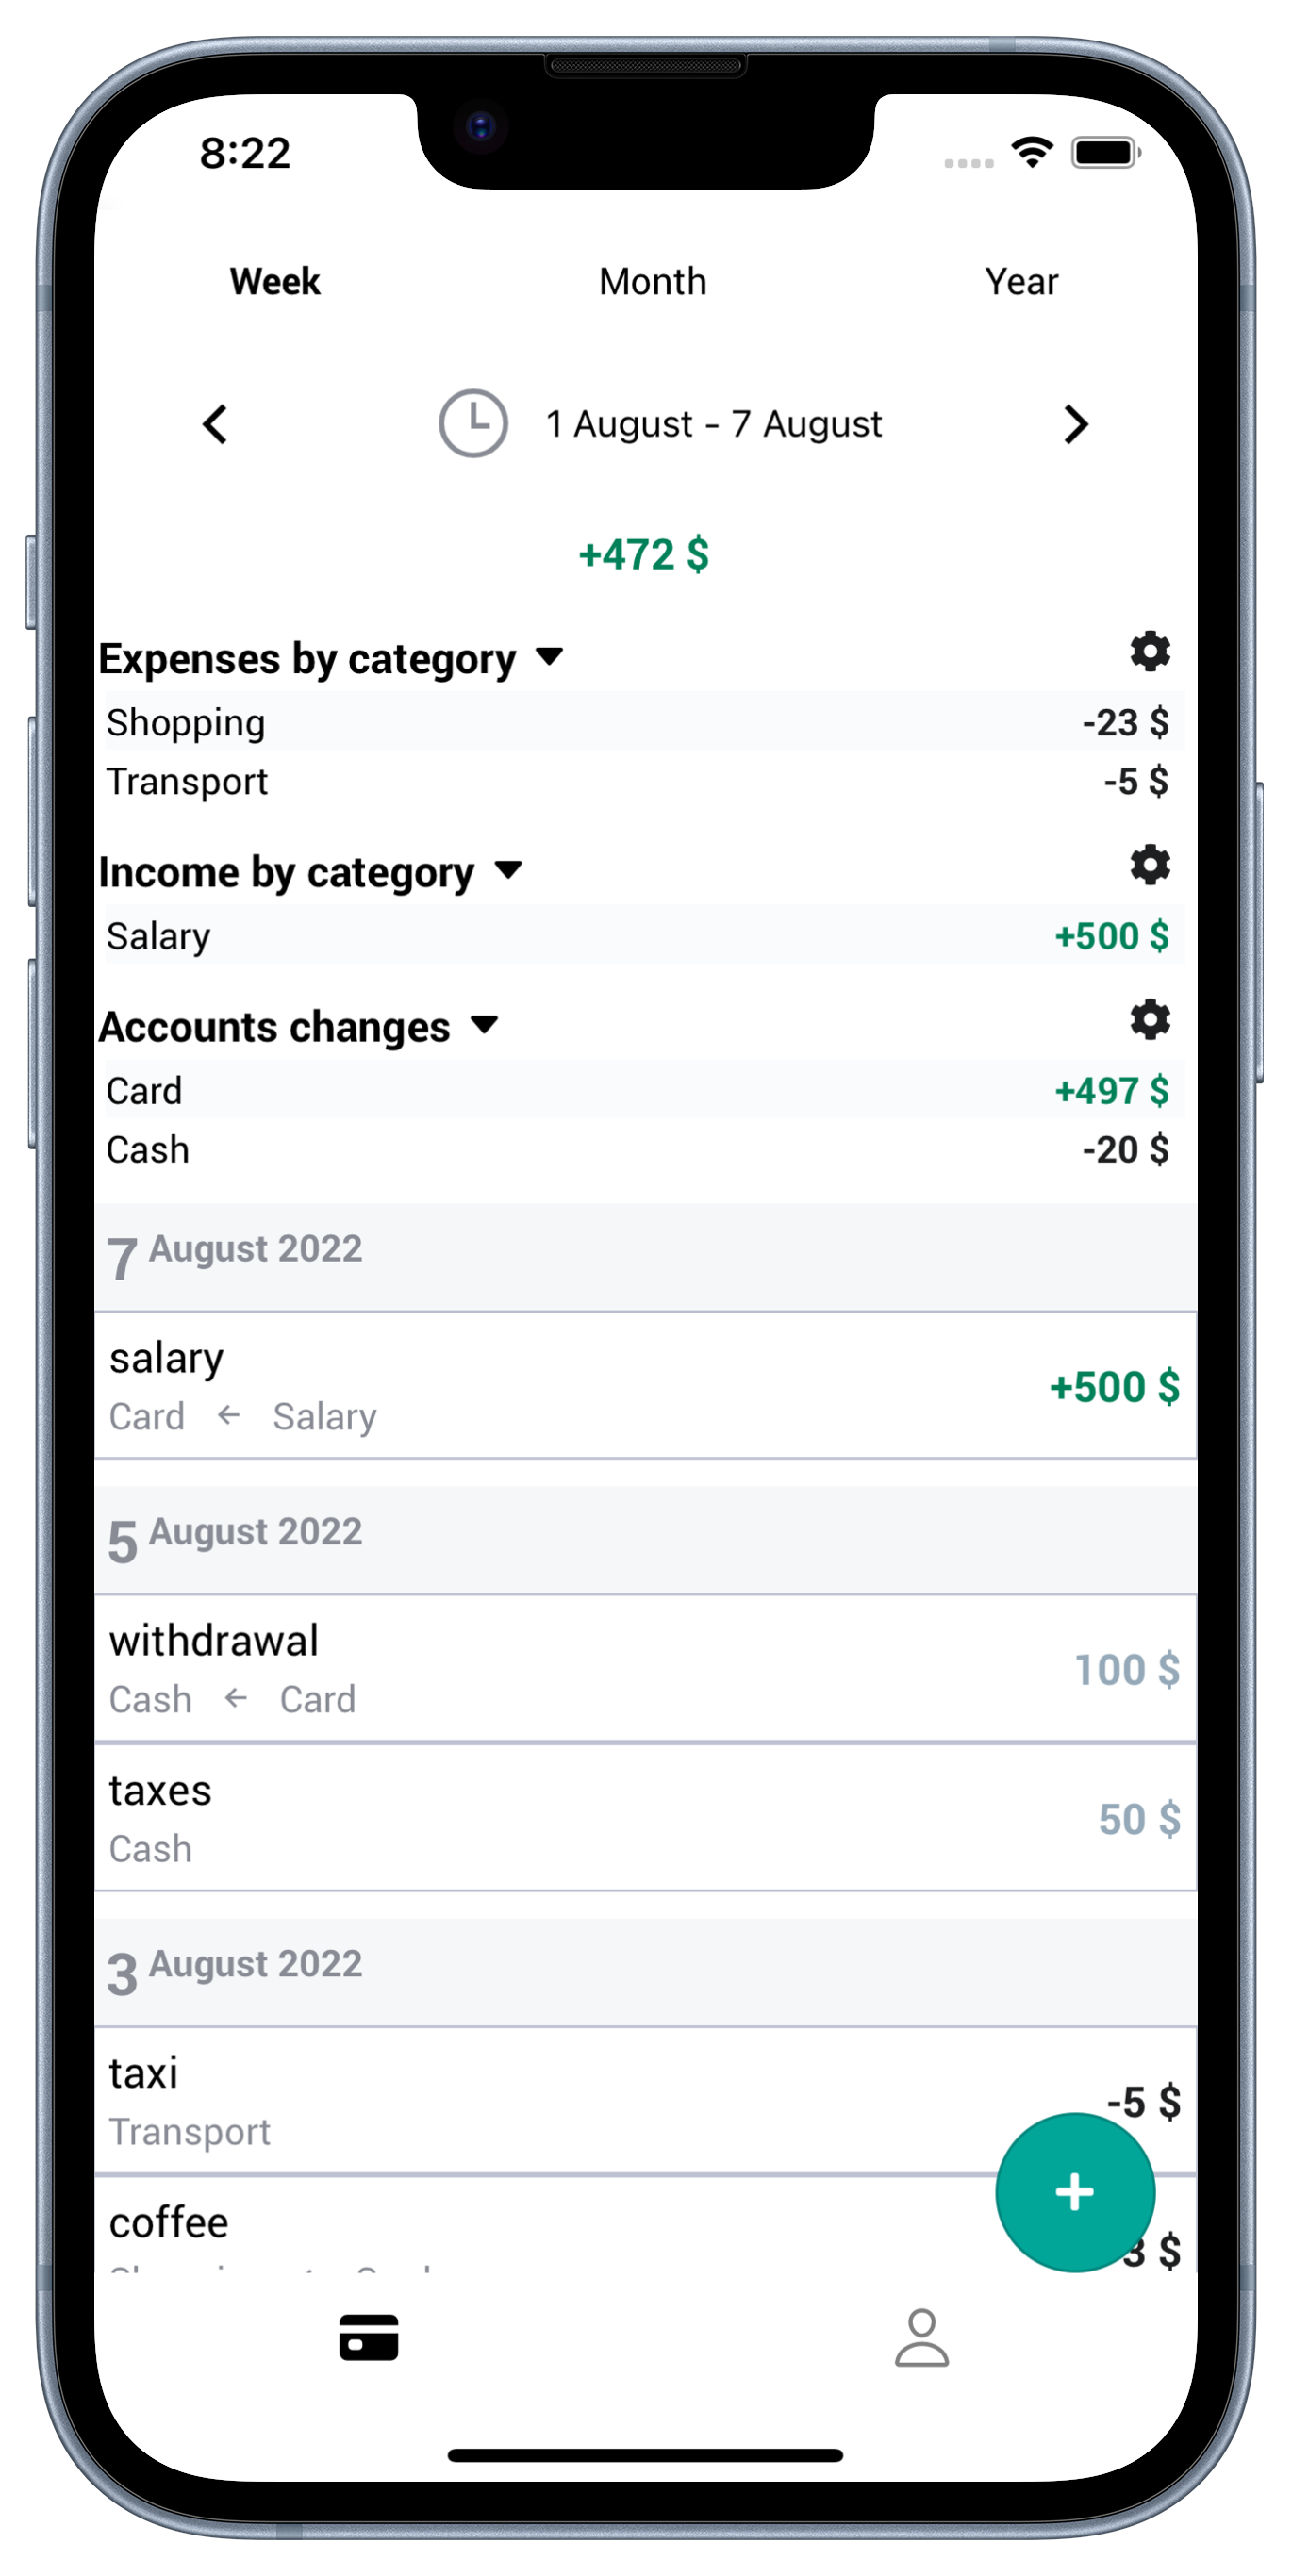 mobile expenses tracker app